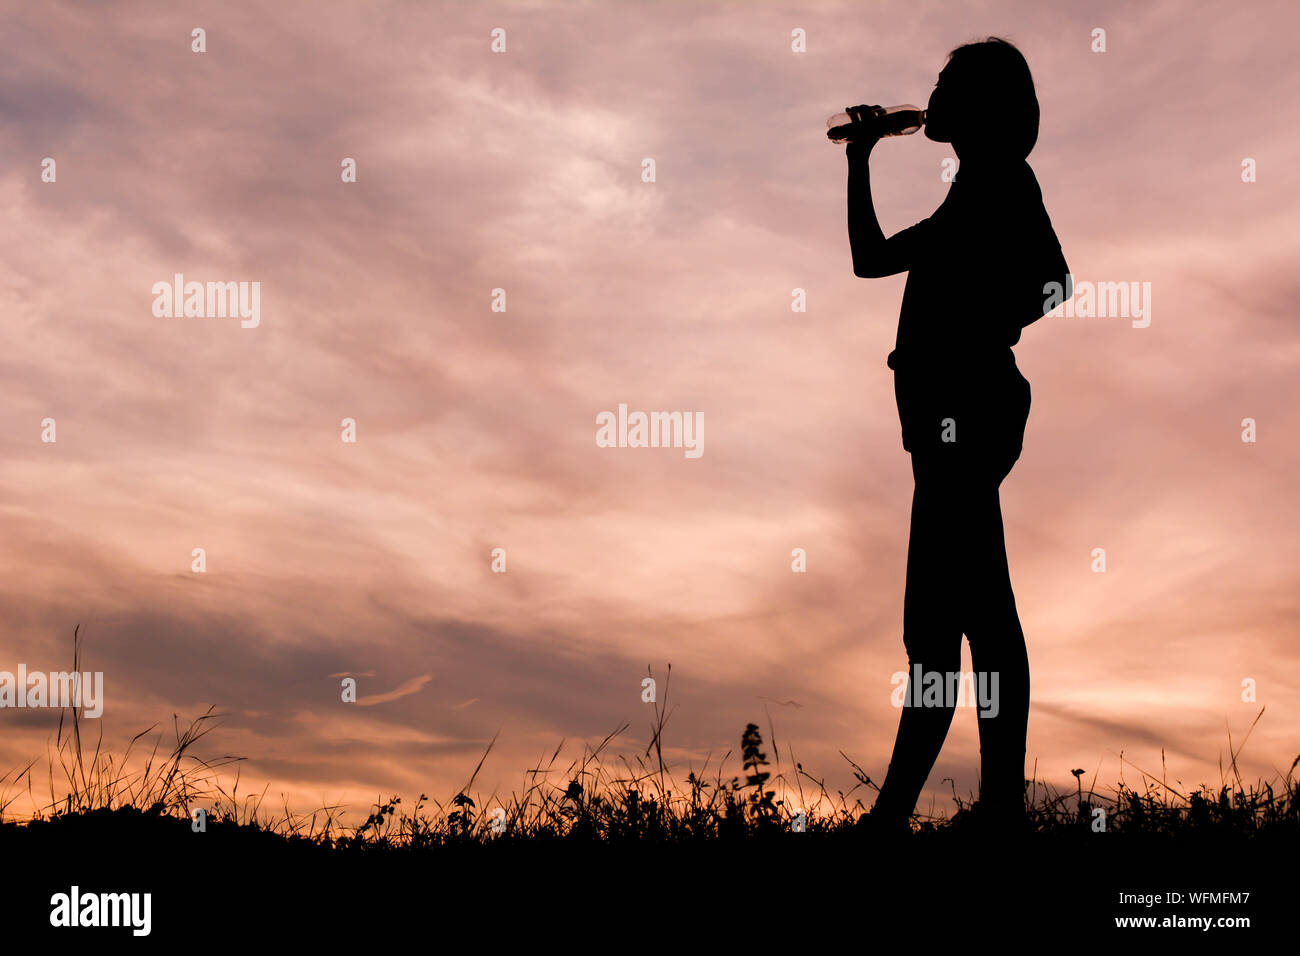 Silhouette di persona in piedi contro il cielo drammatico Foto Stock